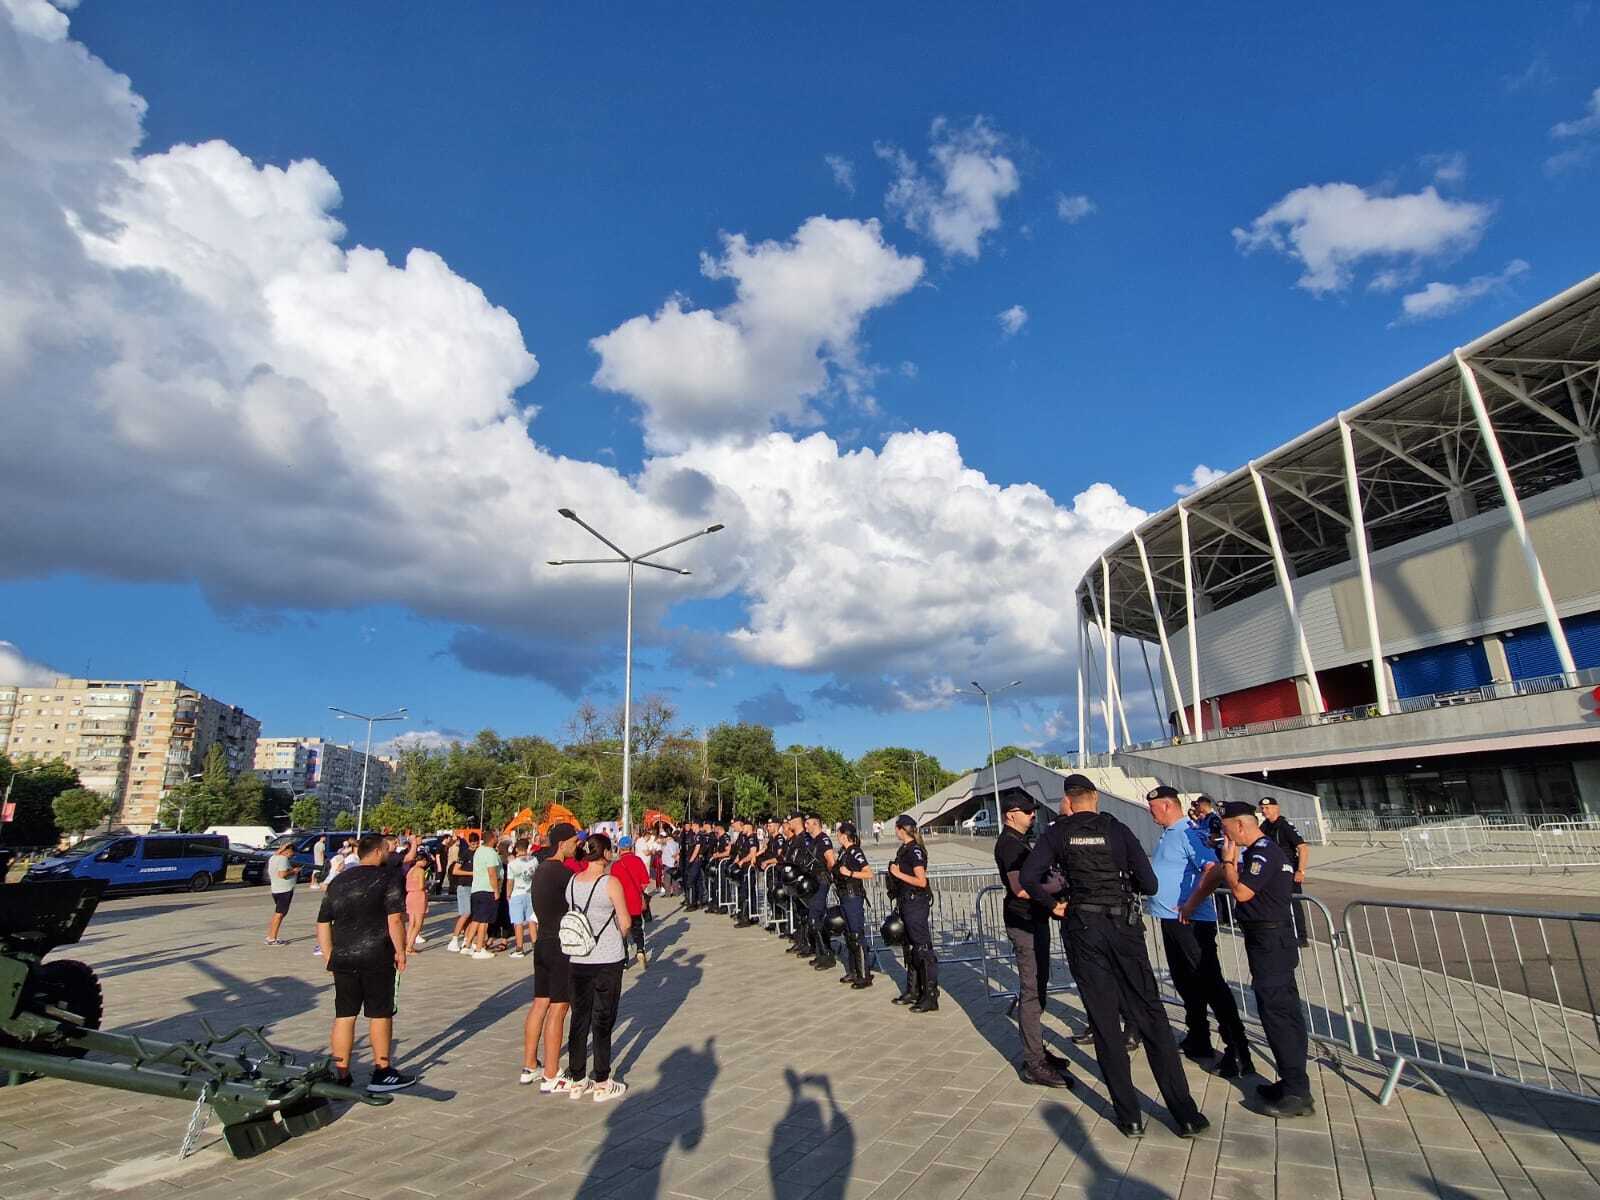 Fanii celor de la FCSB, la stadionul Steaua